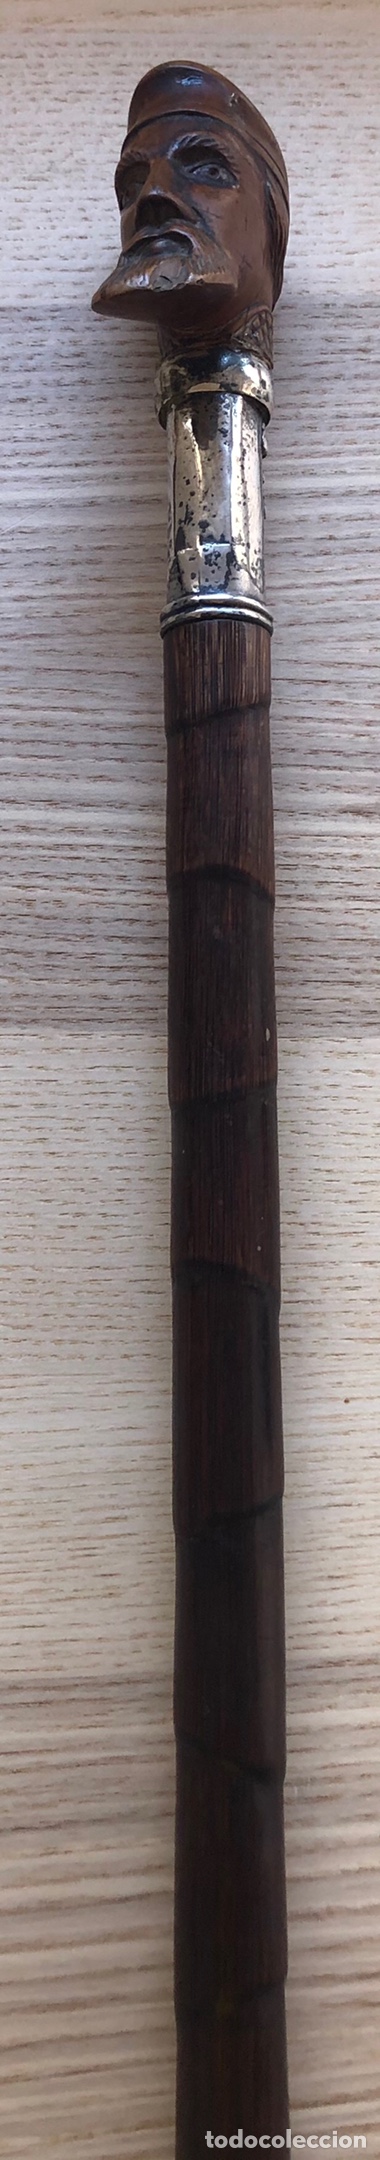 Antigüedades: Magnífico bastón antiguo, con empuñadura en talla de madera, vara de caña, plata, y punta de asta - Foto 6 - 213466631